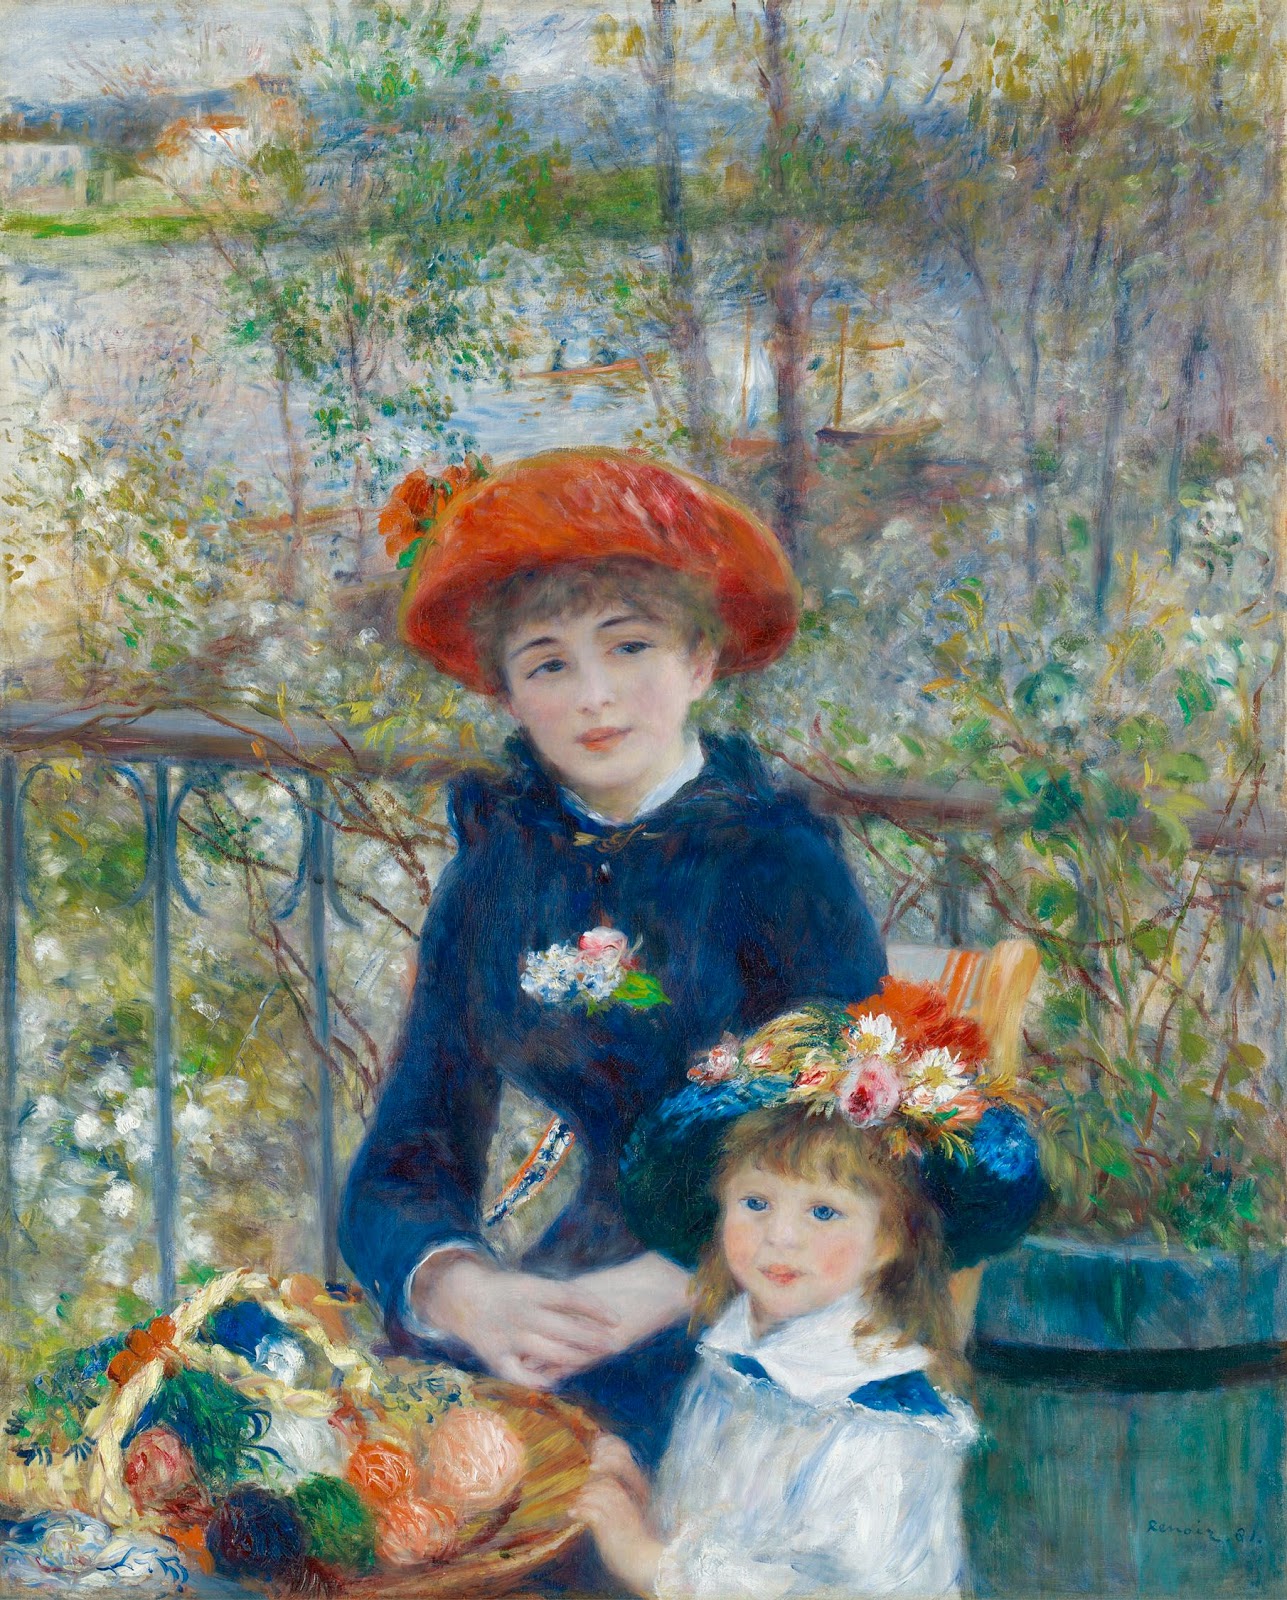 Pierre+Auguste+Renoir-1841-1-19 (1009).jpg